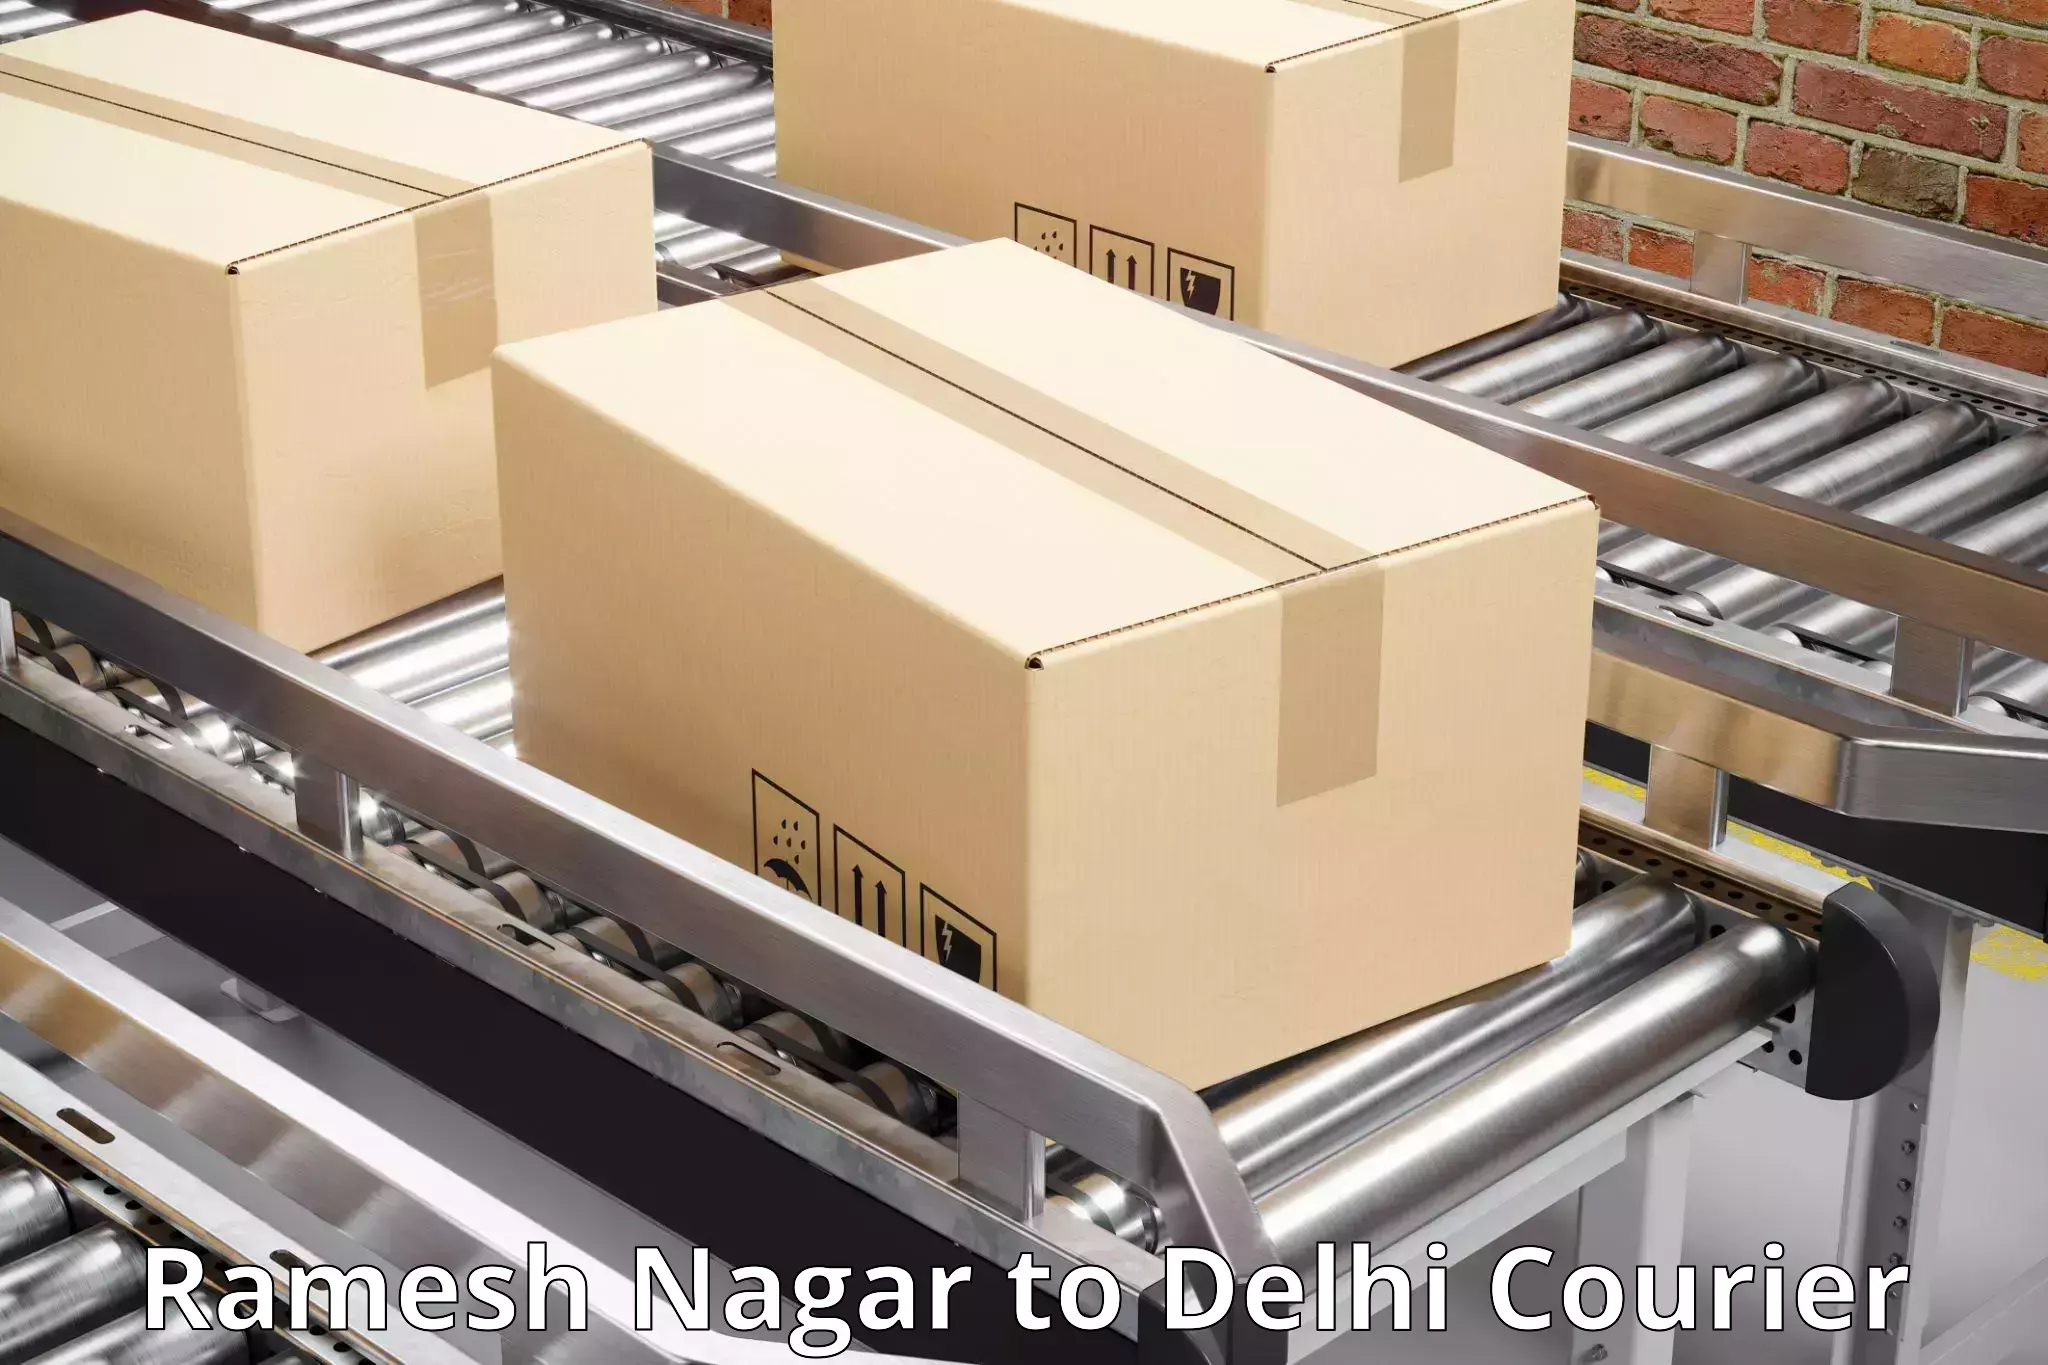 24/7 courier service Ramesh Nagar to Krishna Nagar